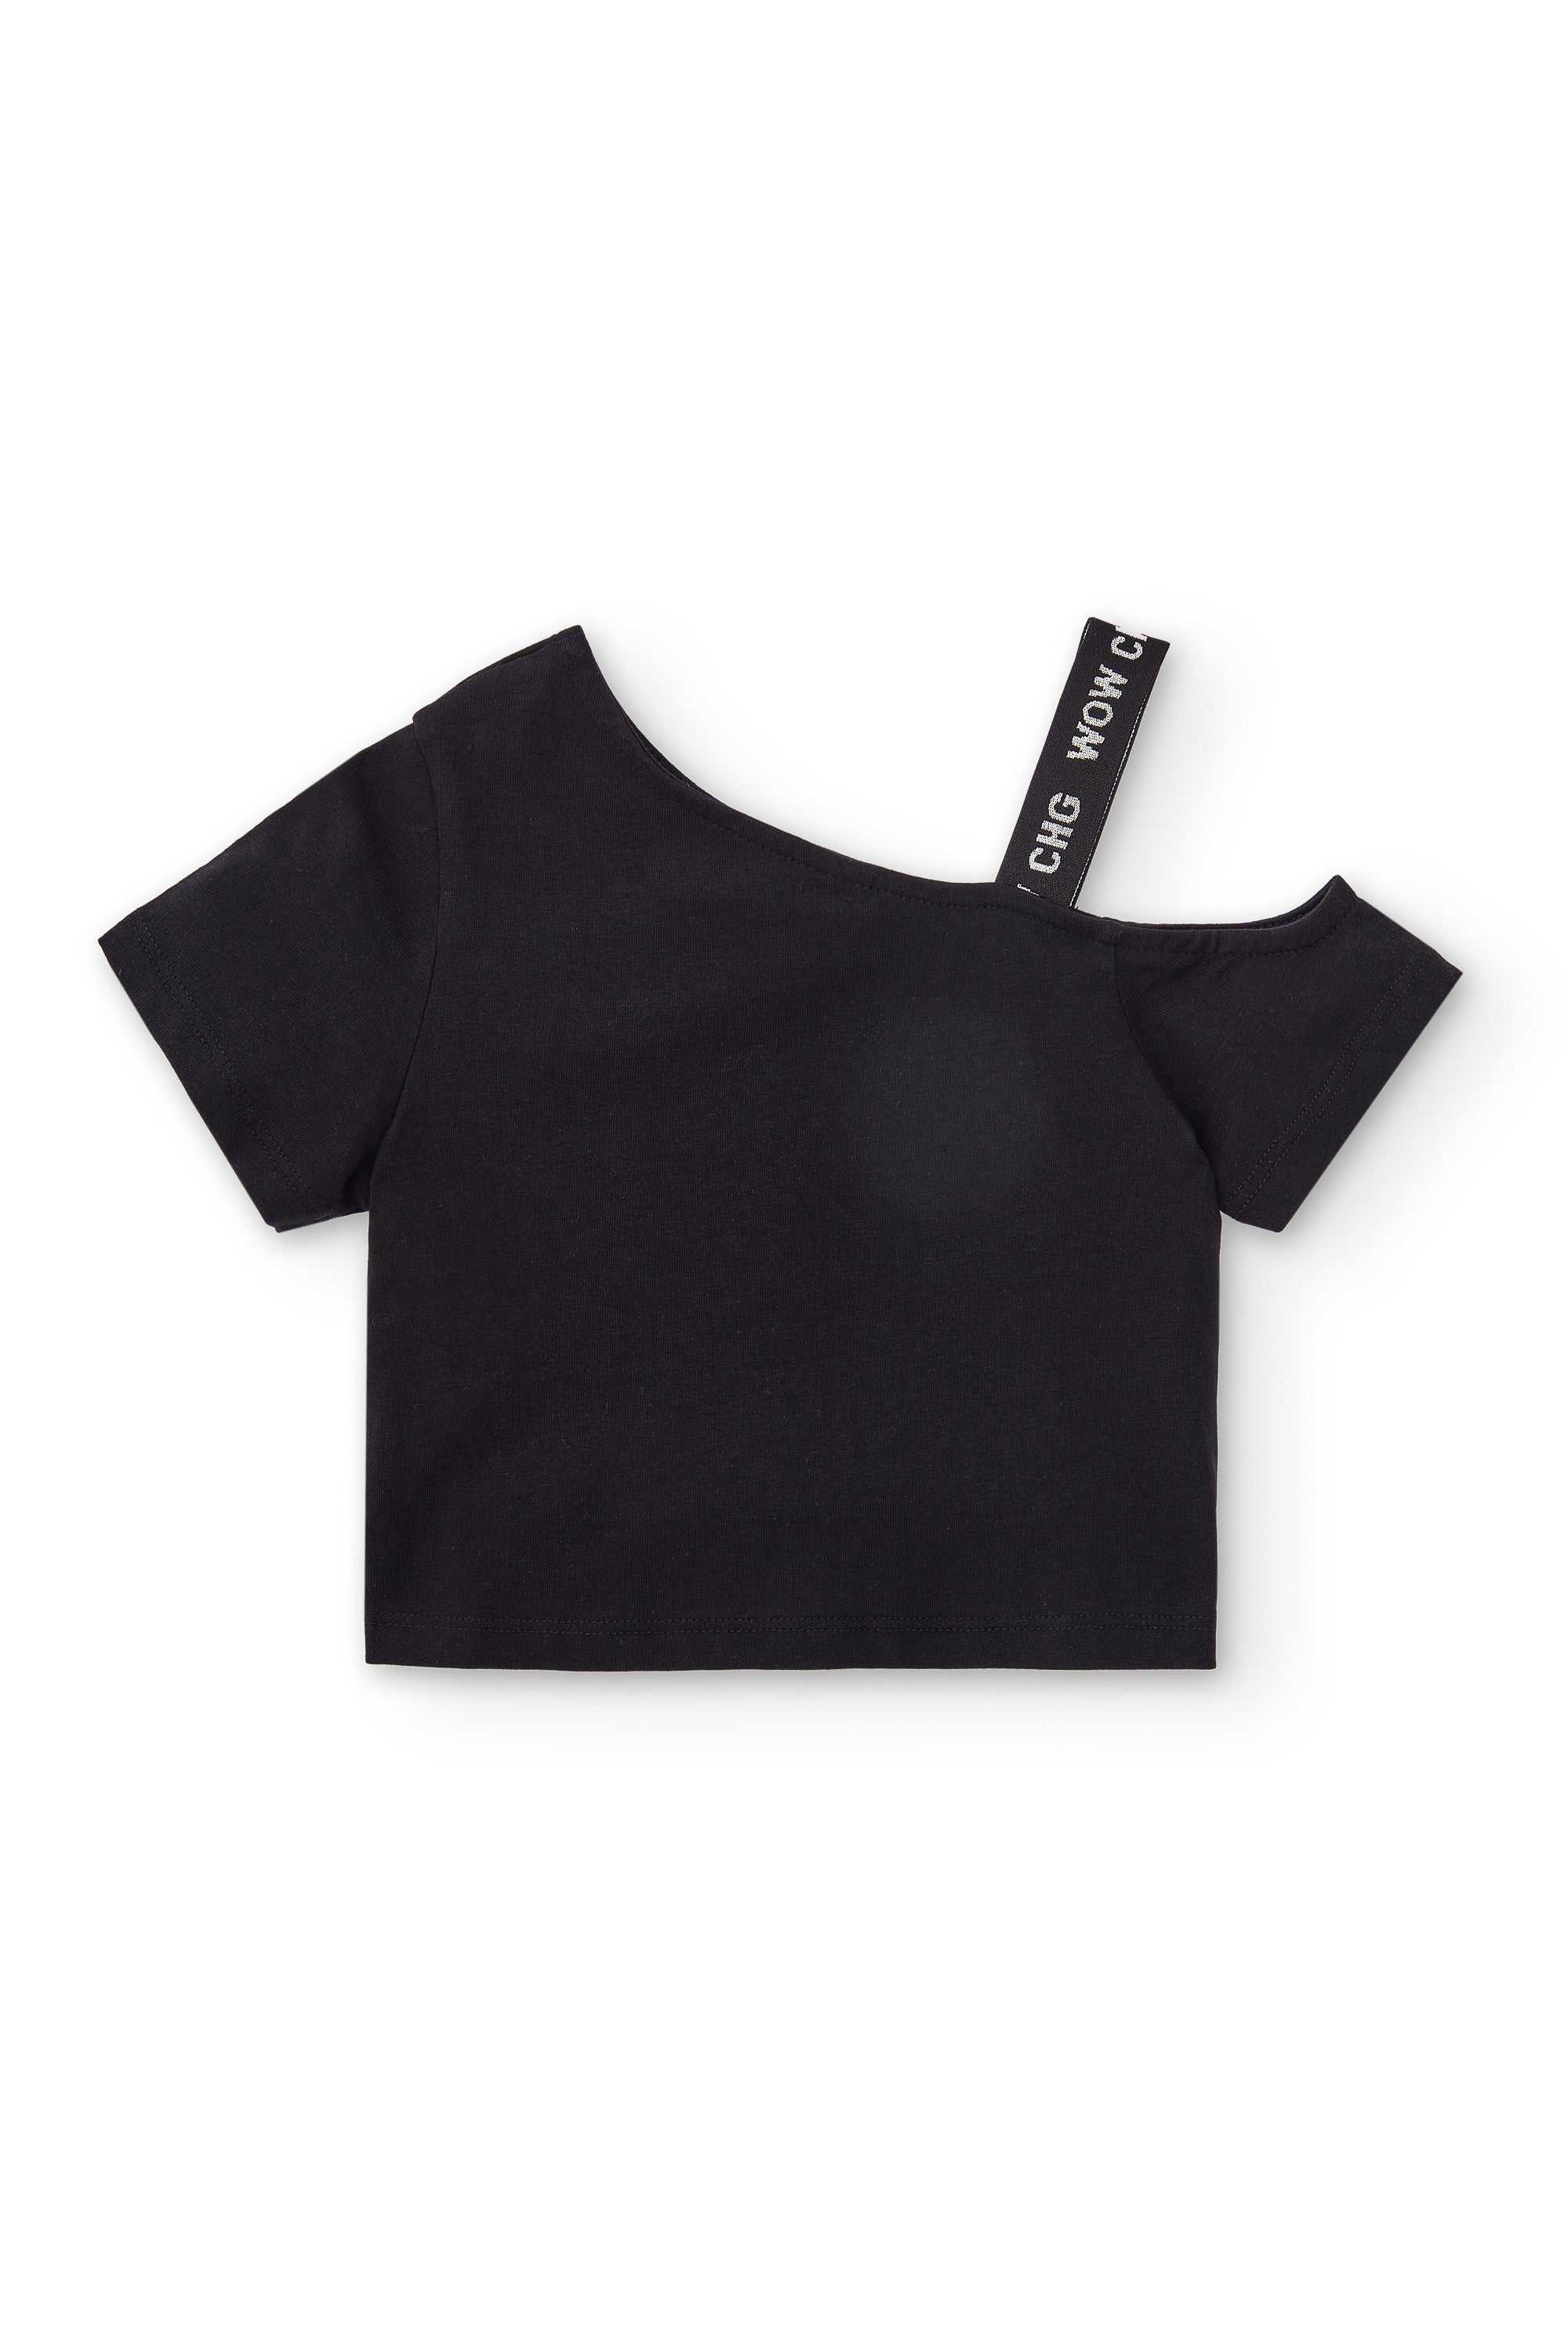 Camiseta de niña negro VERANO/Outlet